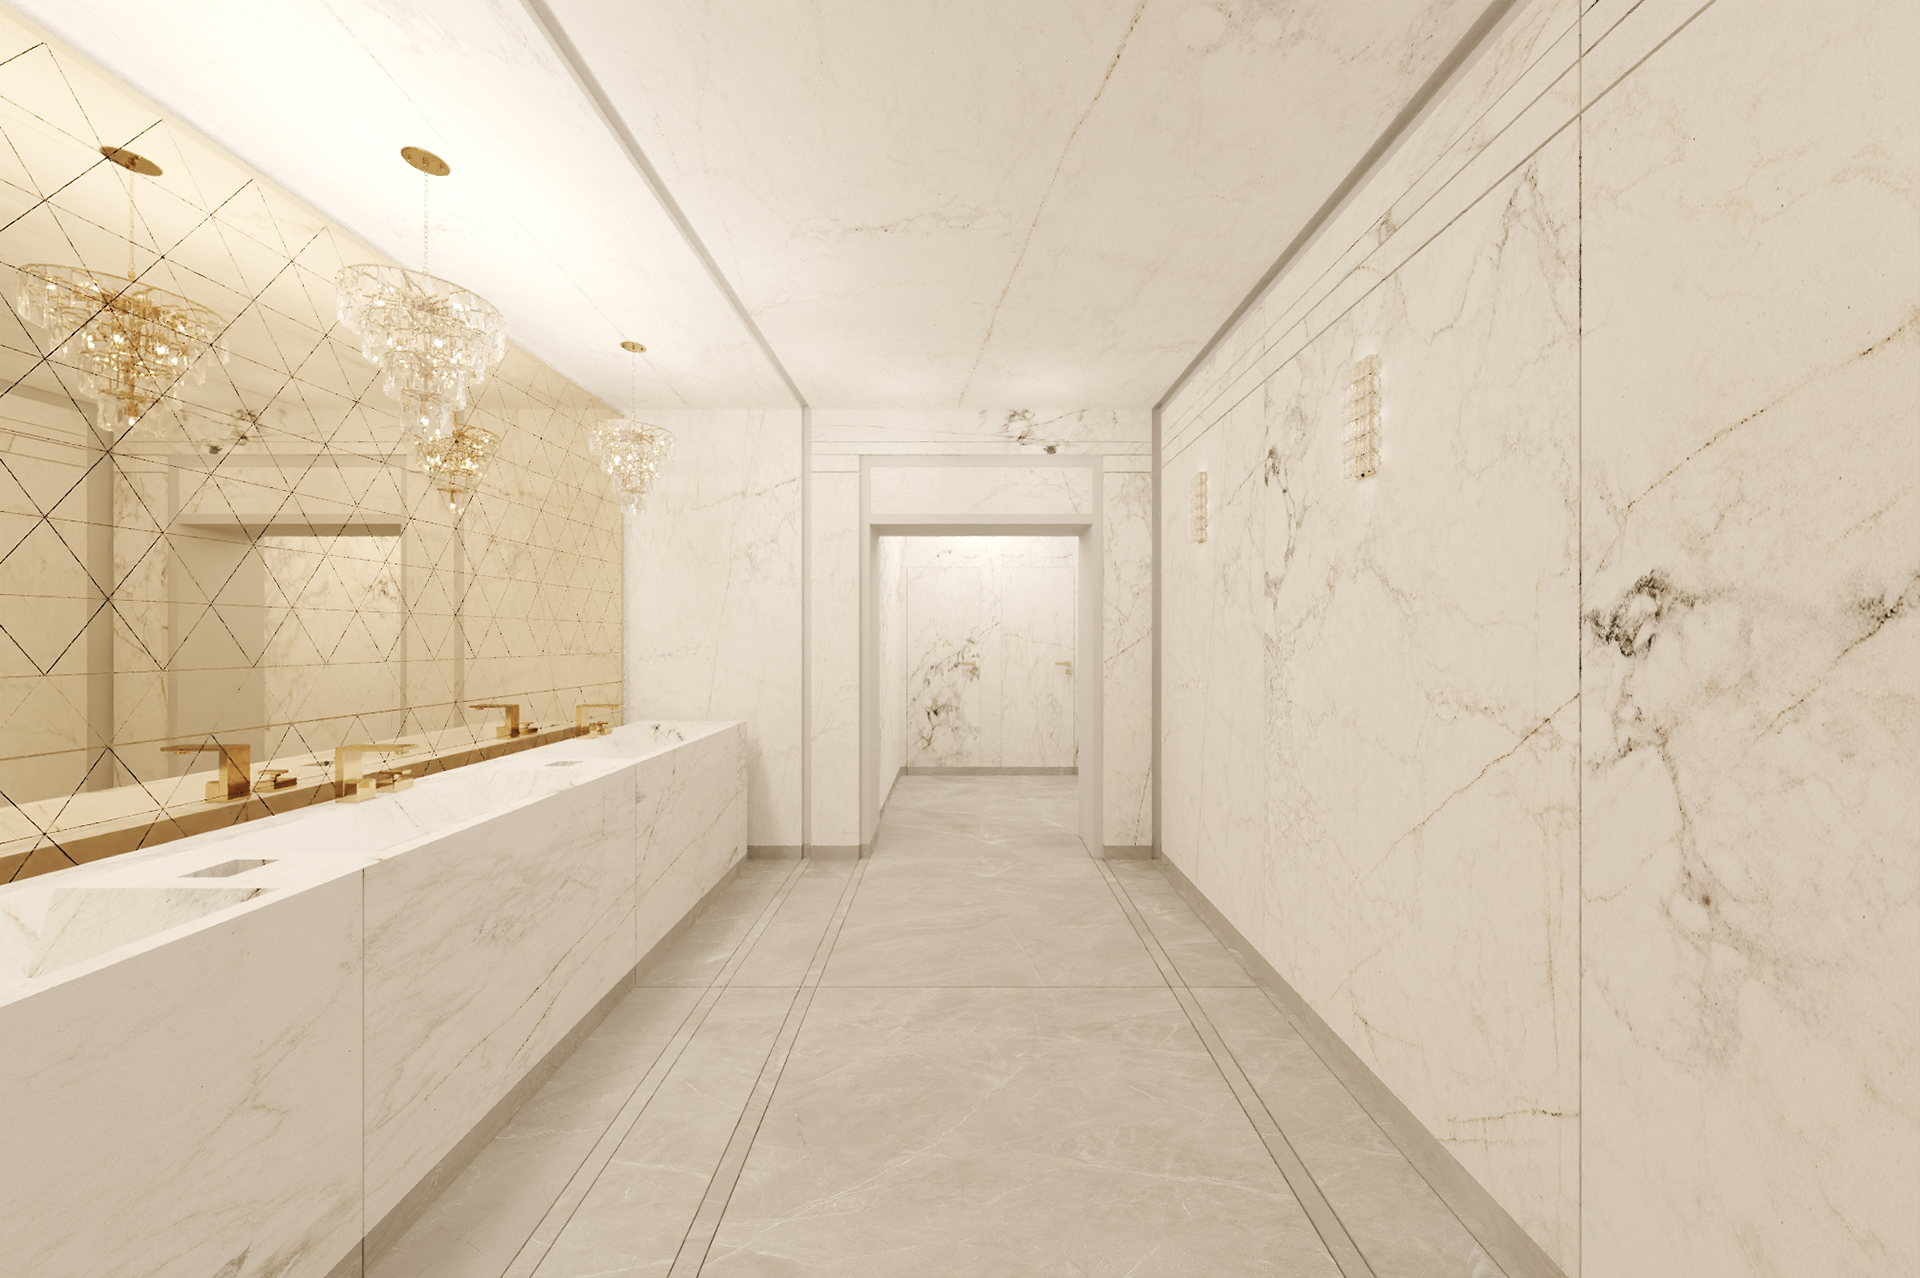 14 Konkurs Tubądzin Design Awards "Toalety Opery Narodowej w Warszawie" - wizualizacja pokazująca  korytarz prowadzący do strefy toalet. Po lewej stronie strefa umywalek, po prawej stronie ściana z dekoracyjnym podziałem płytki.